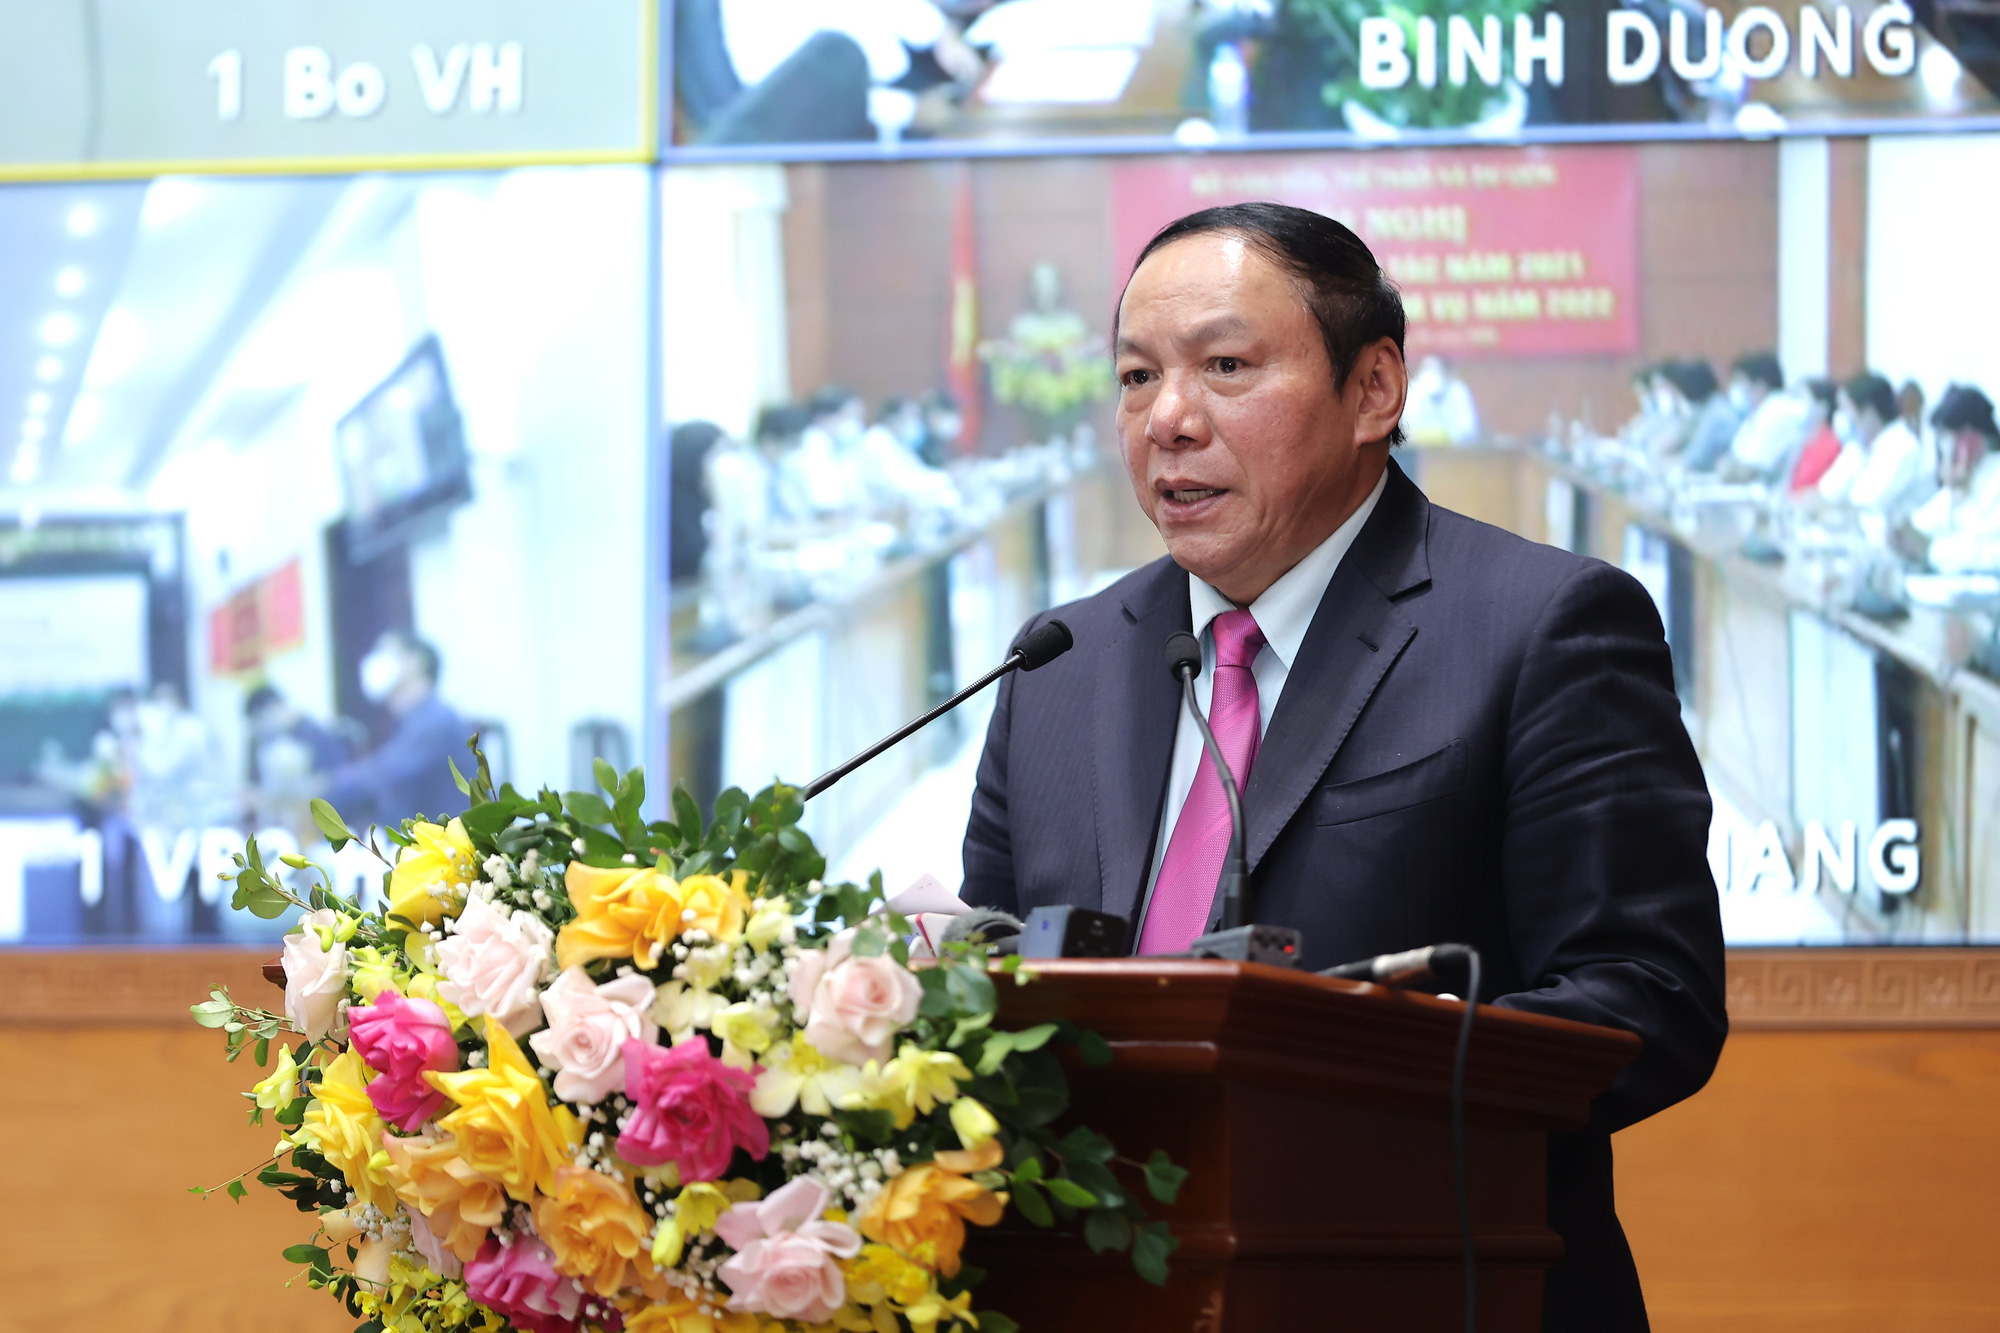 Phó Thủ tướng: “Phải tiếp tục phát huy được truyền thống văn hóa tốt đẹp của con người Việt Nam như lúc khó khăn, dịch bệnh” - Ảnh 6.